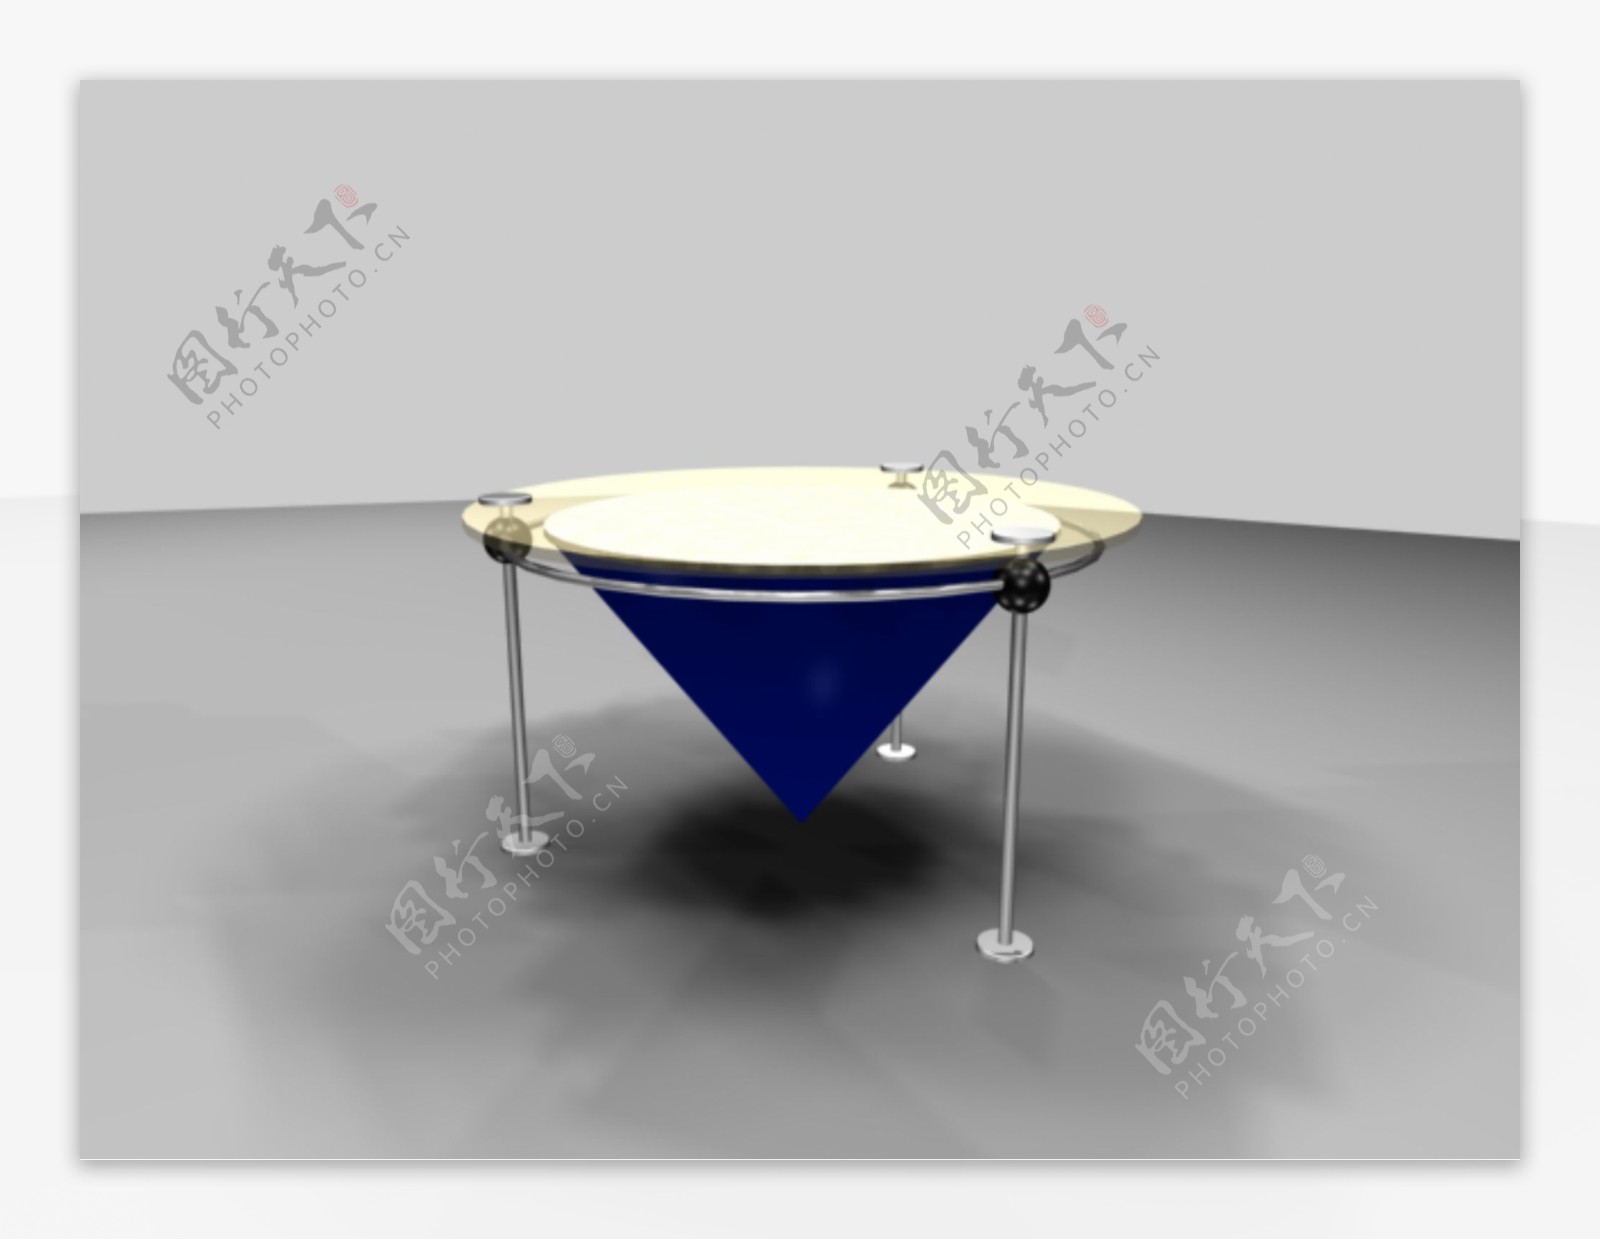 公装家具之桌子0143D模型